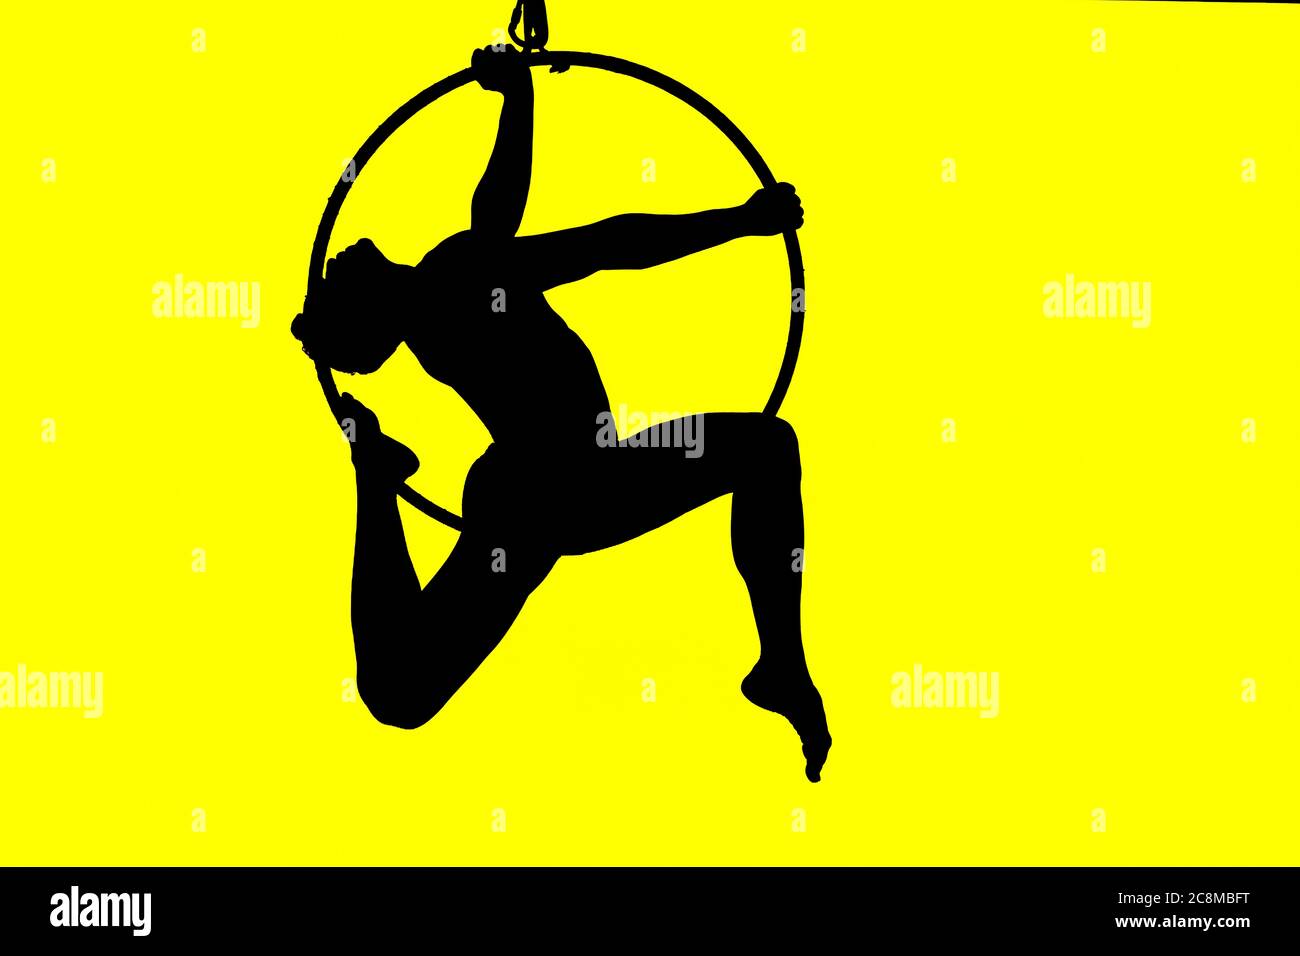 Silhouette des Menschen in hohen akrobatischen Reifen mit eleganten Pose und gelb beleuchteten Hintergrund Stockfoto